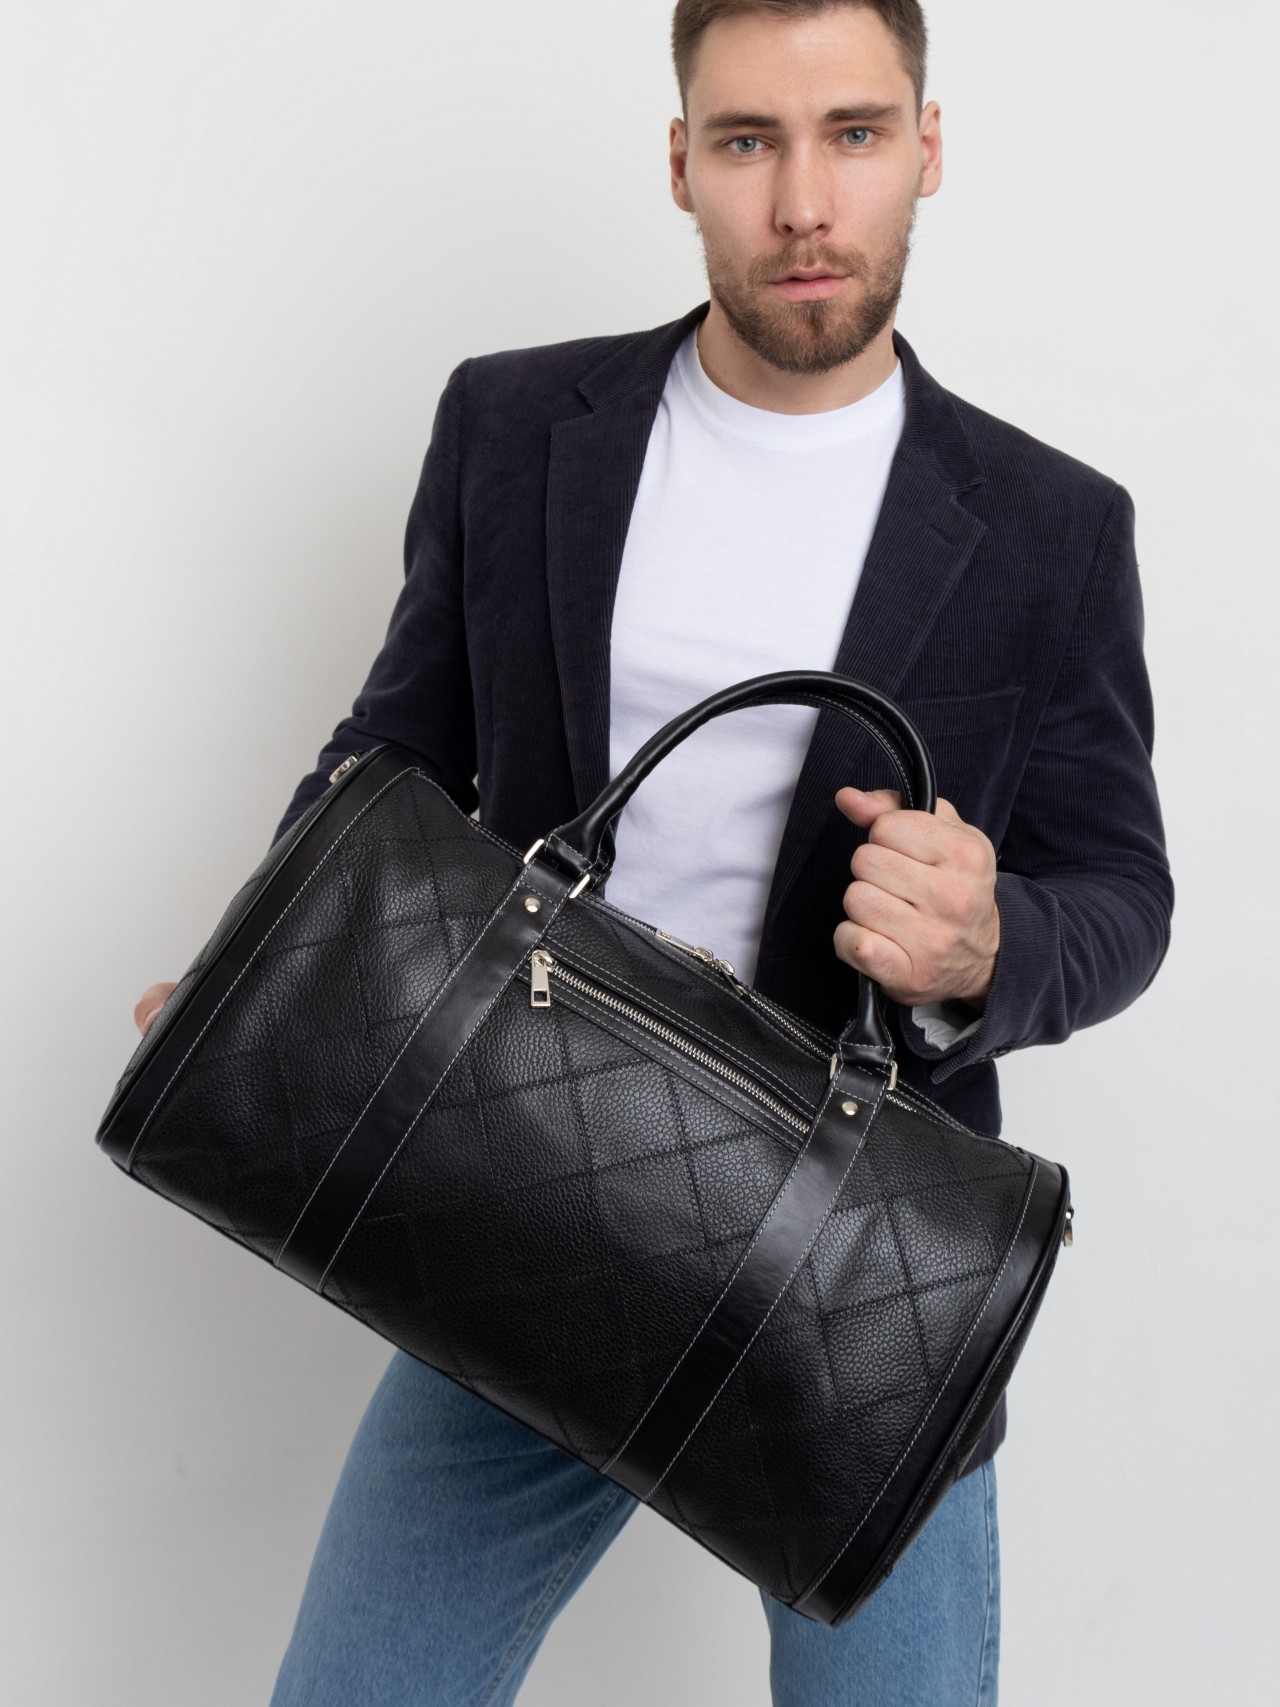 Дорожная сумка мужская Franchesco Mariscotti 6-428кFM черная, 26x47x23 см